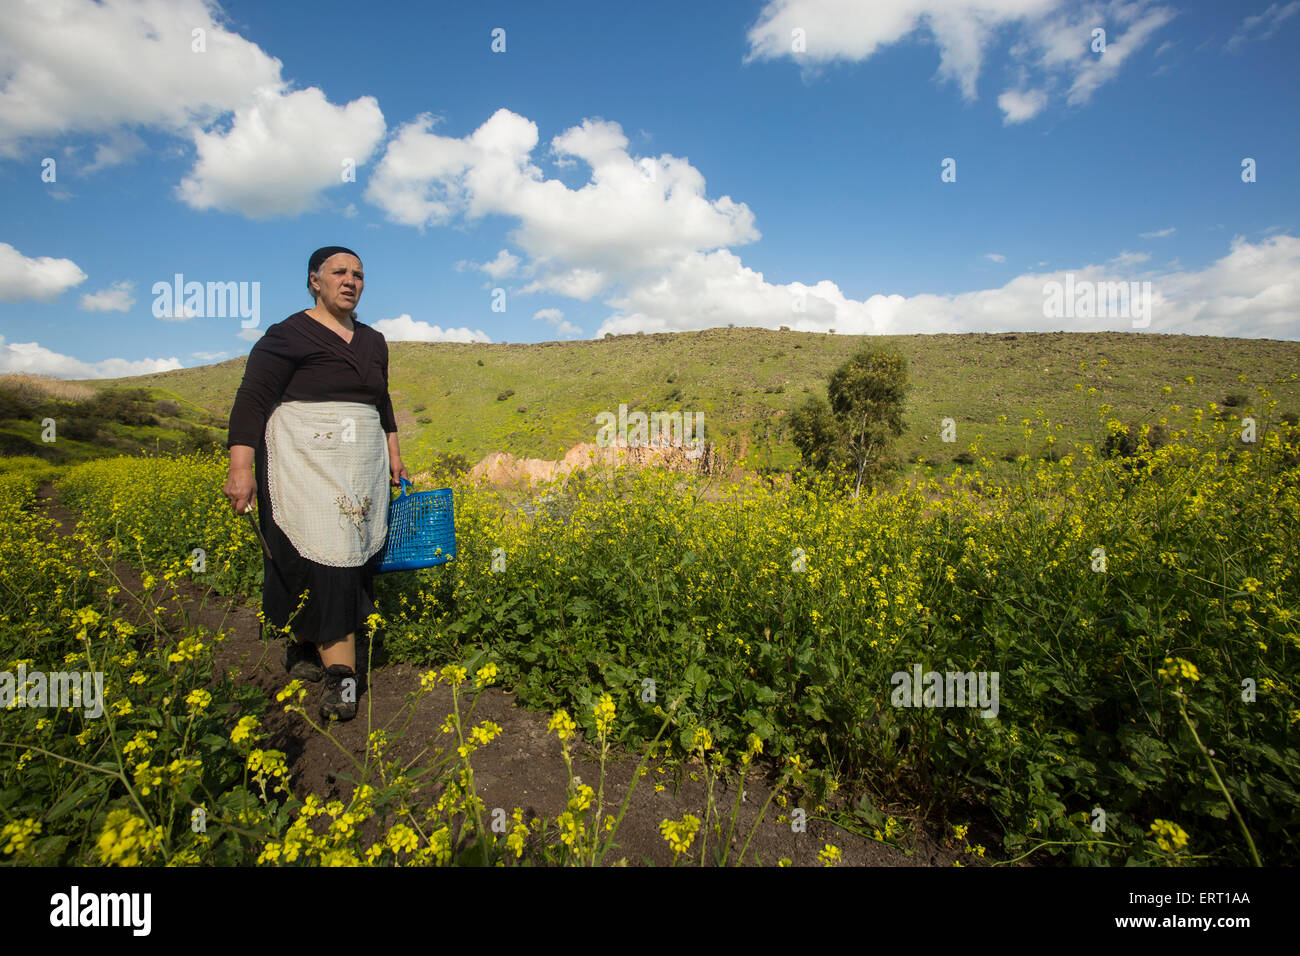 Locale, Arab contadini raccolgono erbe nel campo Foto Stock